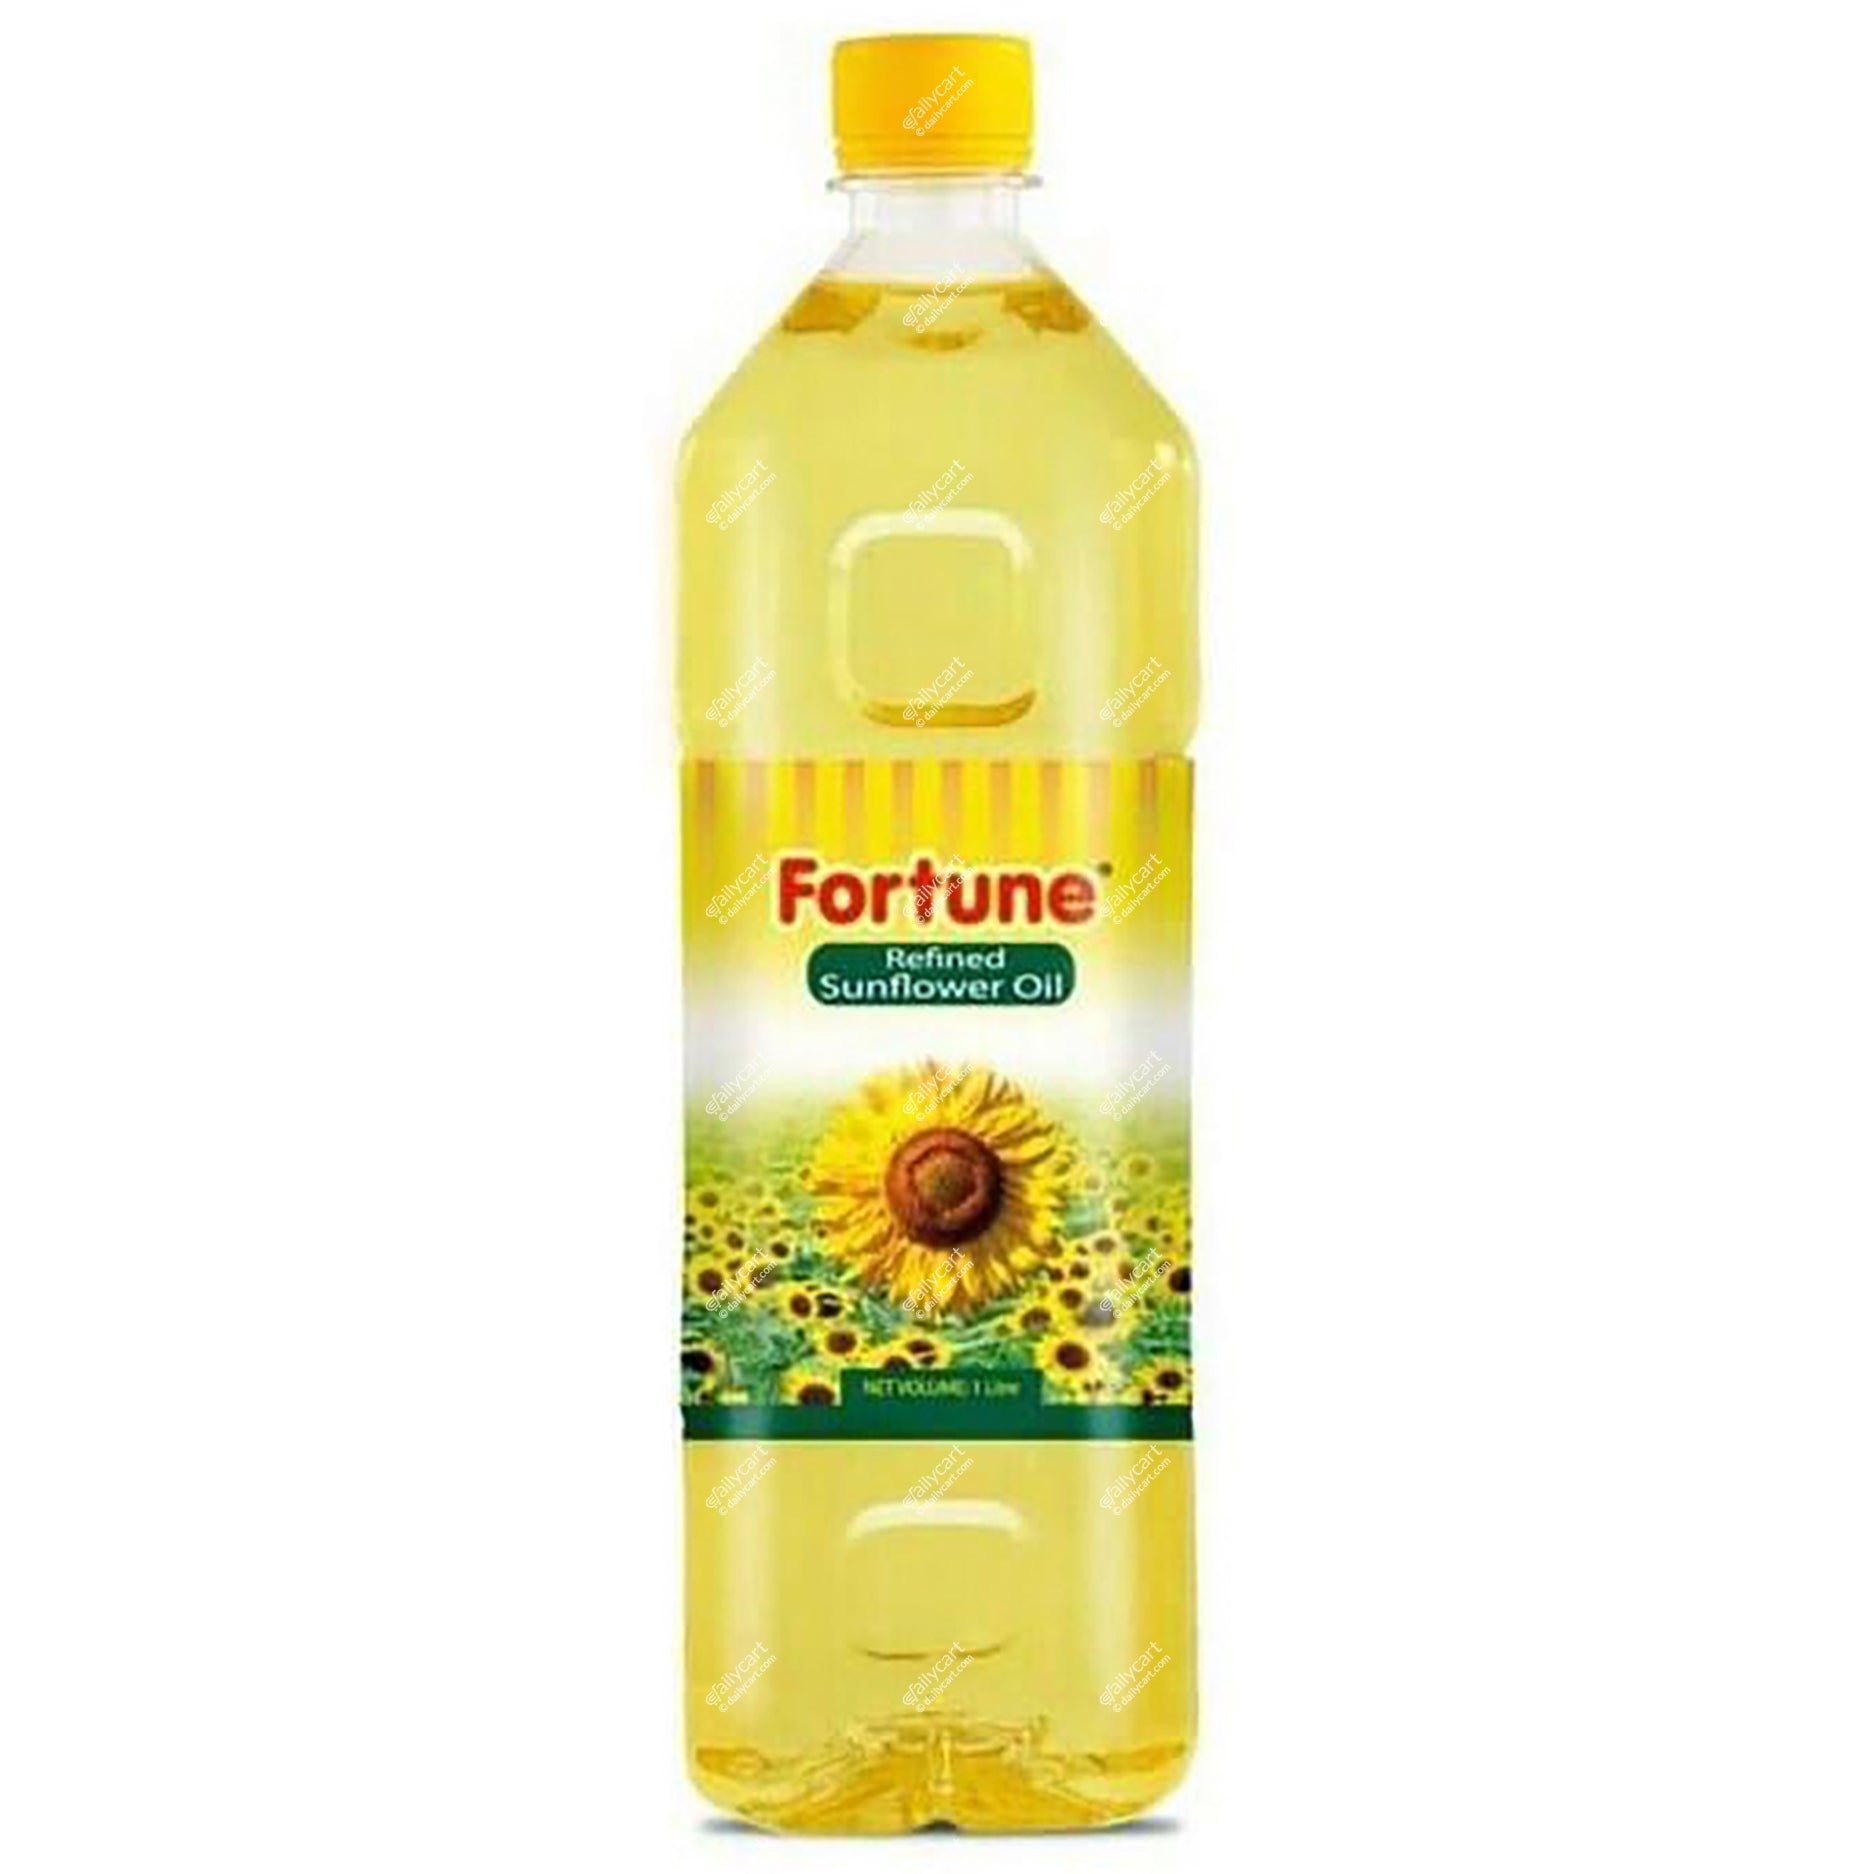 Fortune Sunflower Oil, 1 litre